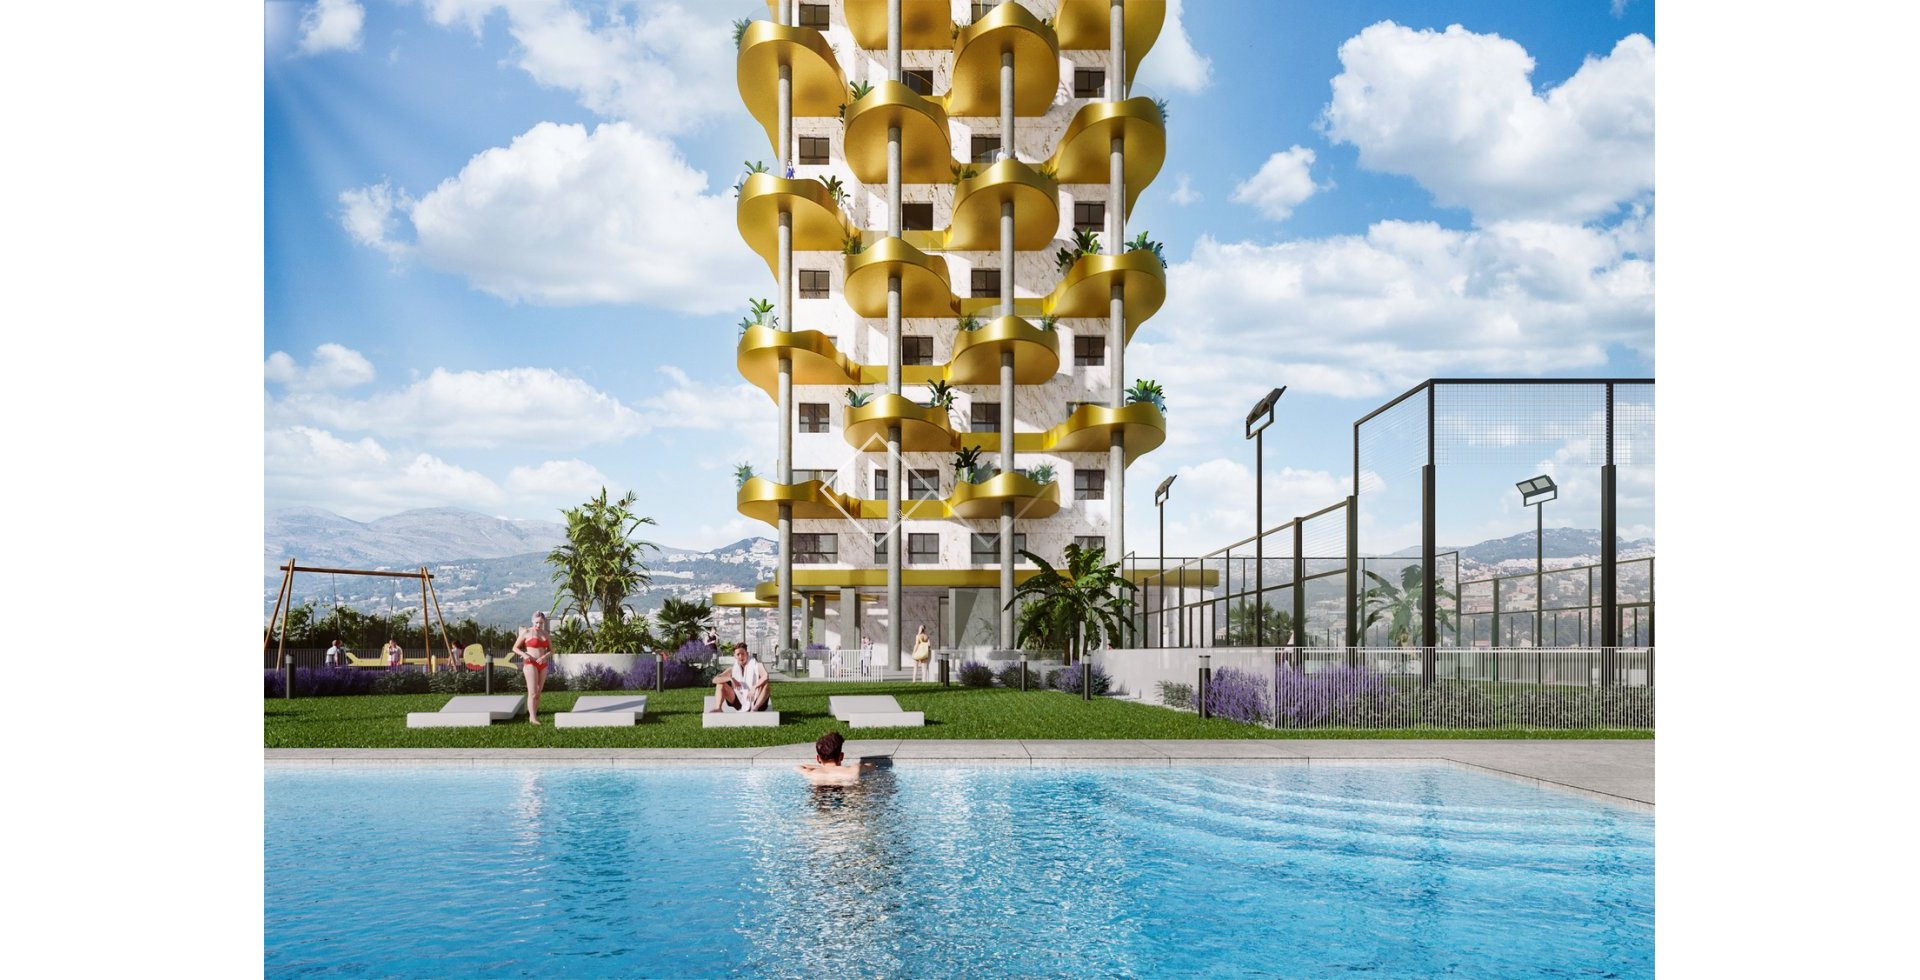 pool en paddle baan - Nieuwbouw appartementen te koop in opvallend luxe complex, Calpe